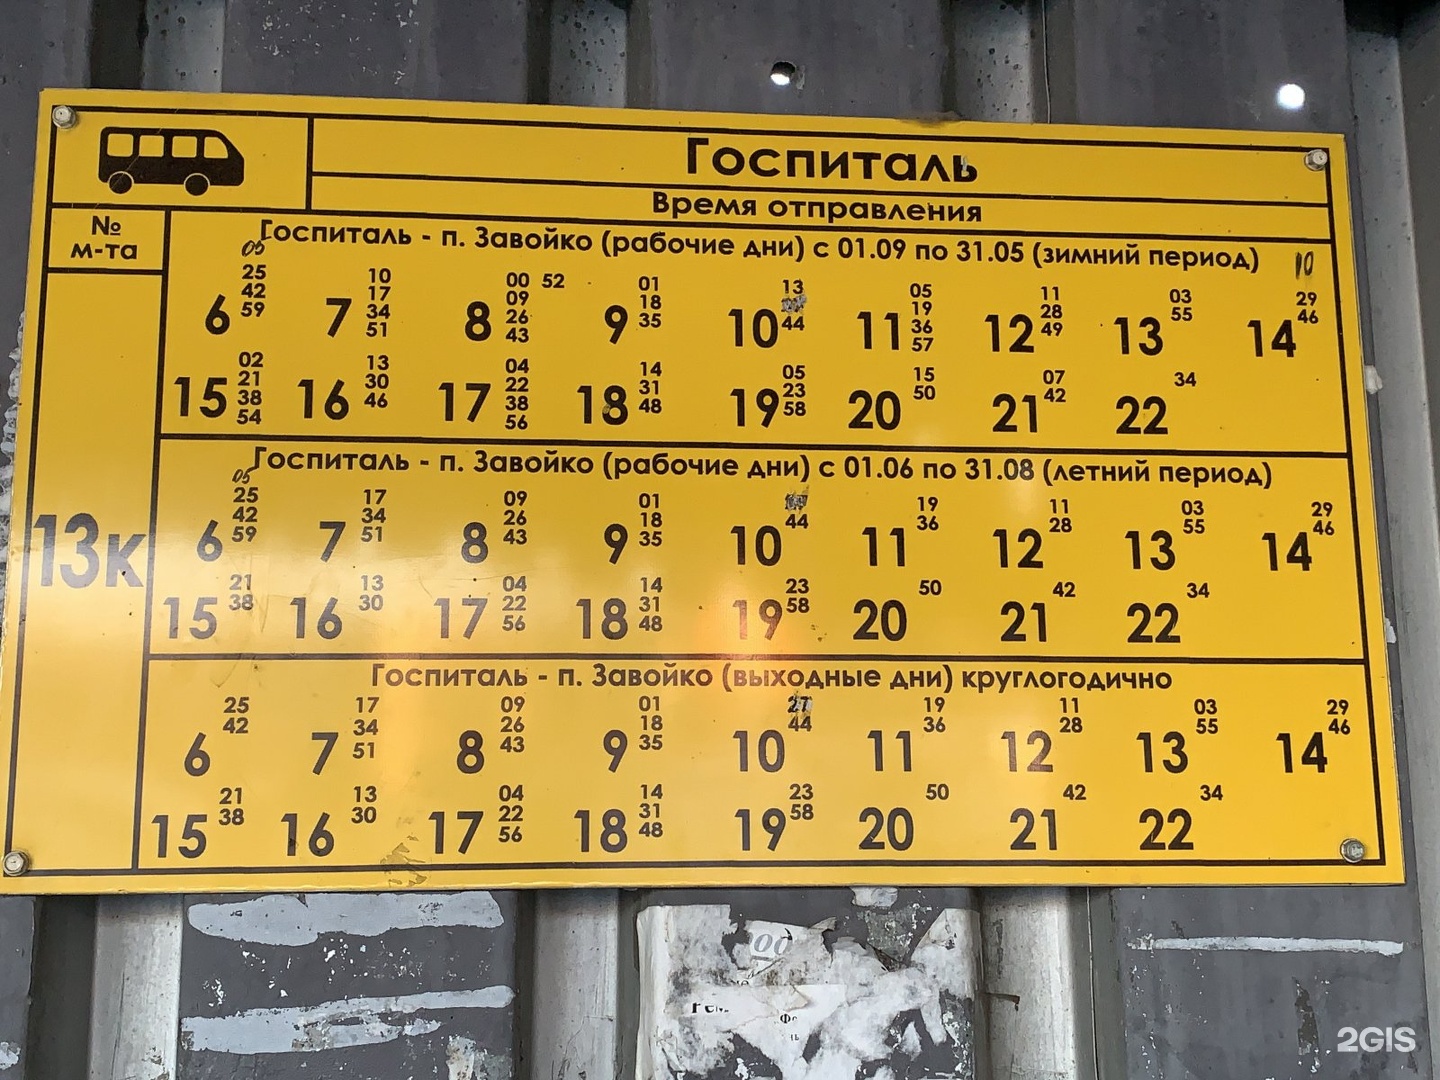 Расписание 111 автобуса камчатский